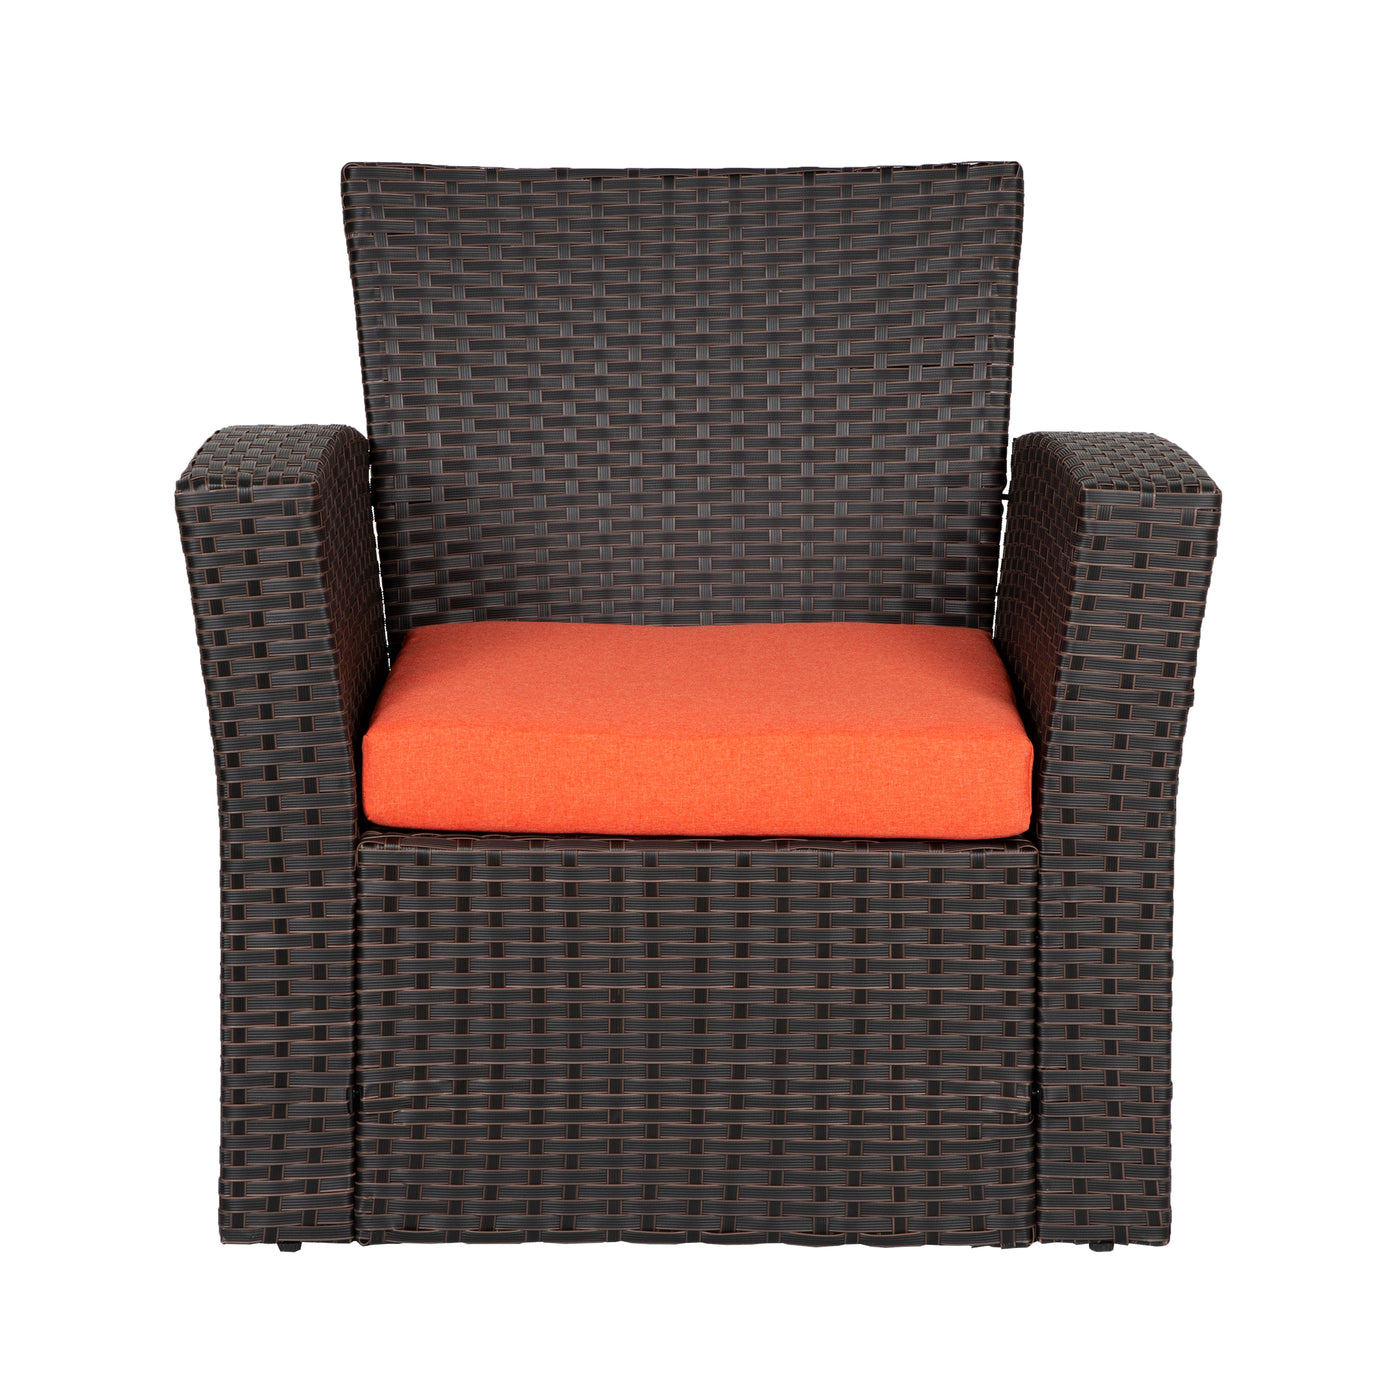 Coastal Outdoor Patio Sofa Seat Cushion (Set of 2)